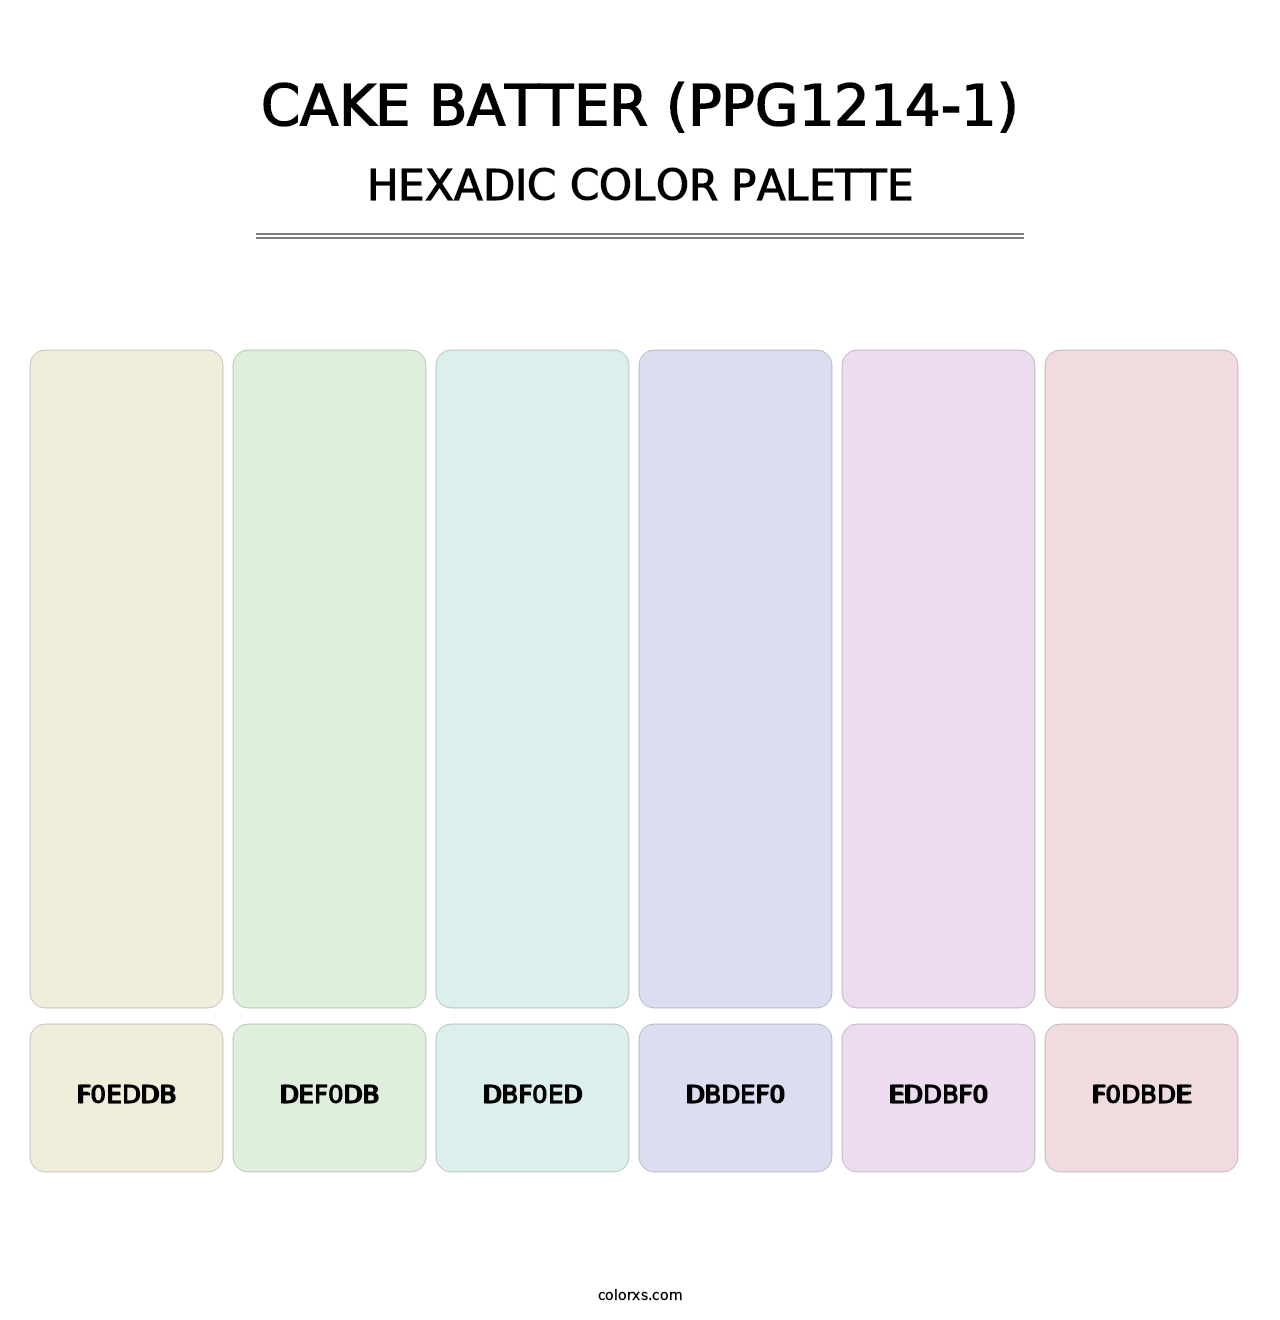 Cake Batter (PPG1214-1) - Hexadic Color Palette